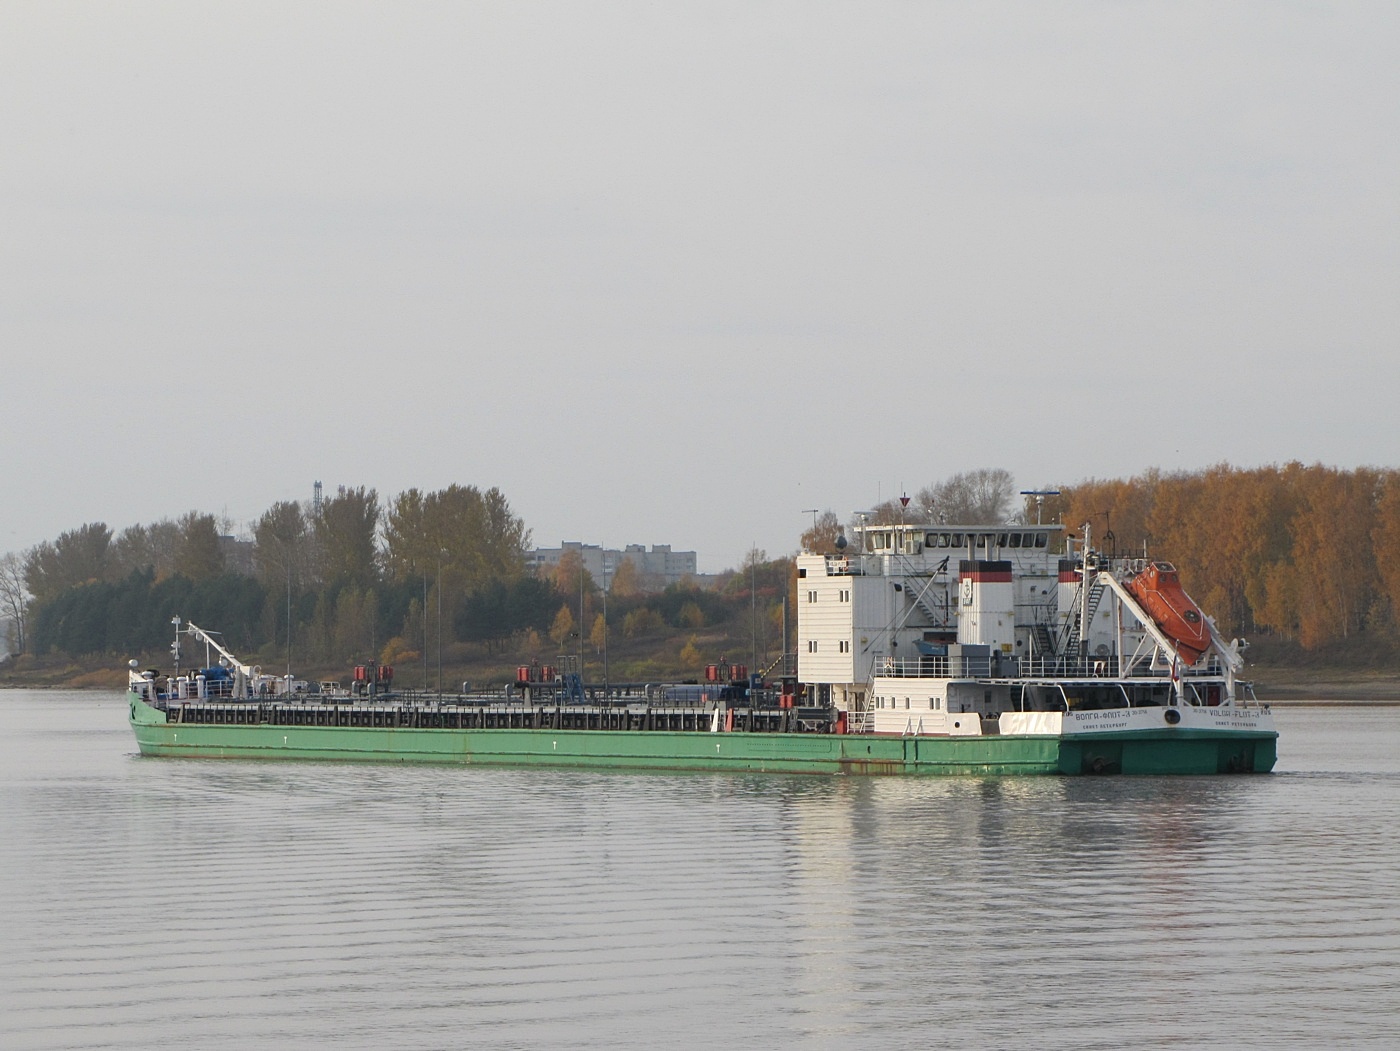 Волга-Флот 3